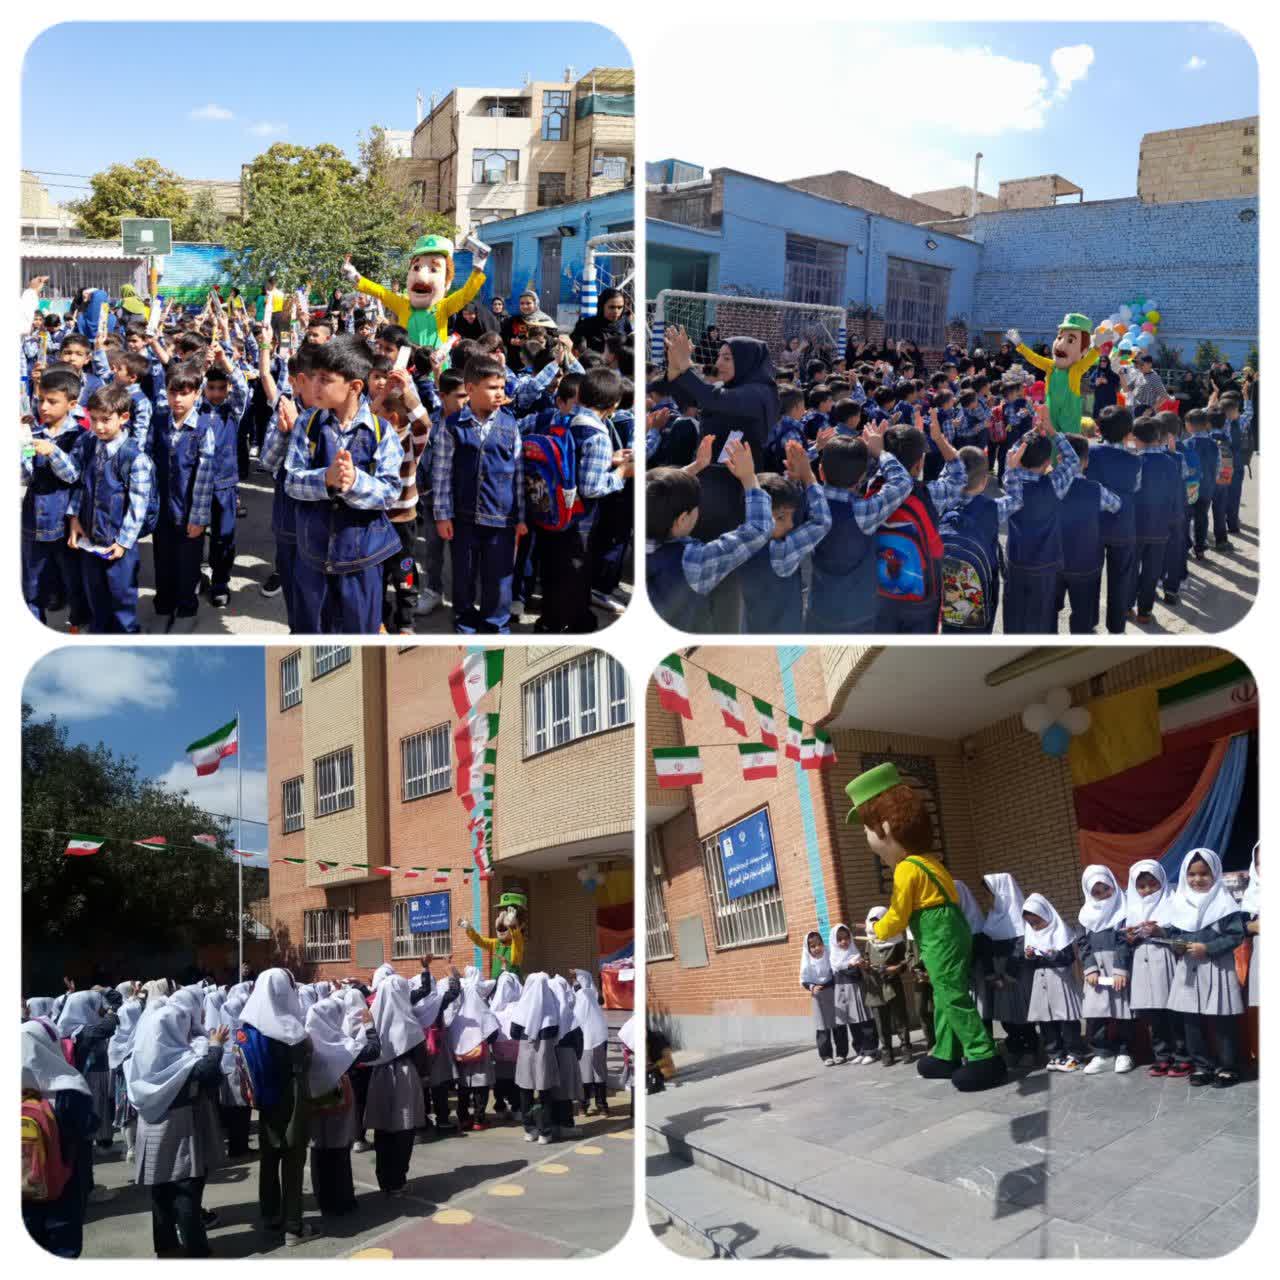 آموزش بازیافت در روز جشن شکوفه ها به دانش آموزان توسط شهرداری مشهد